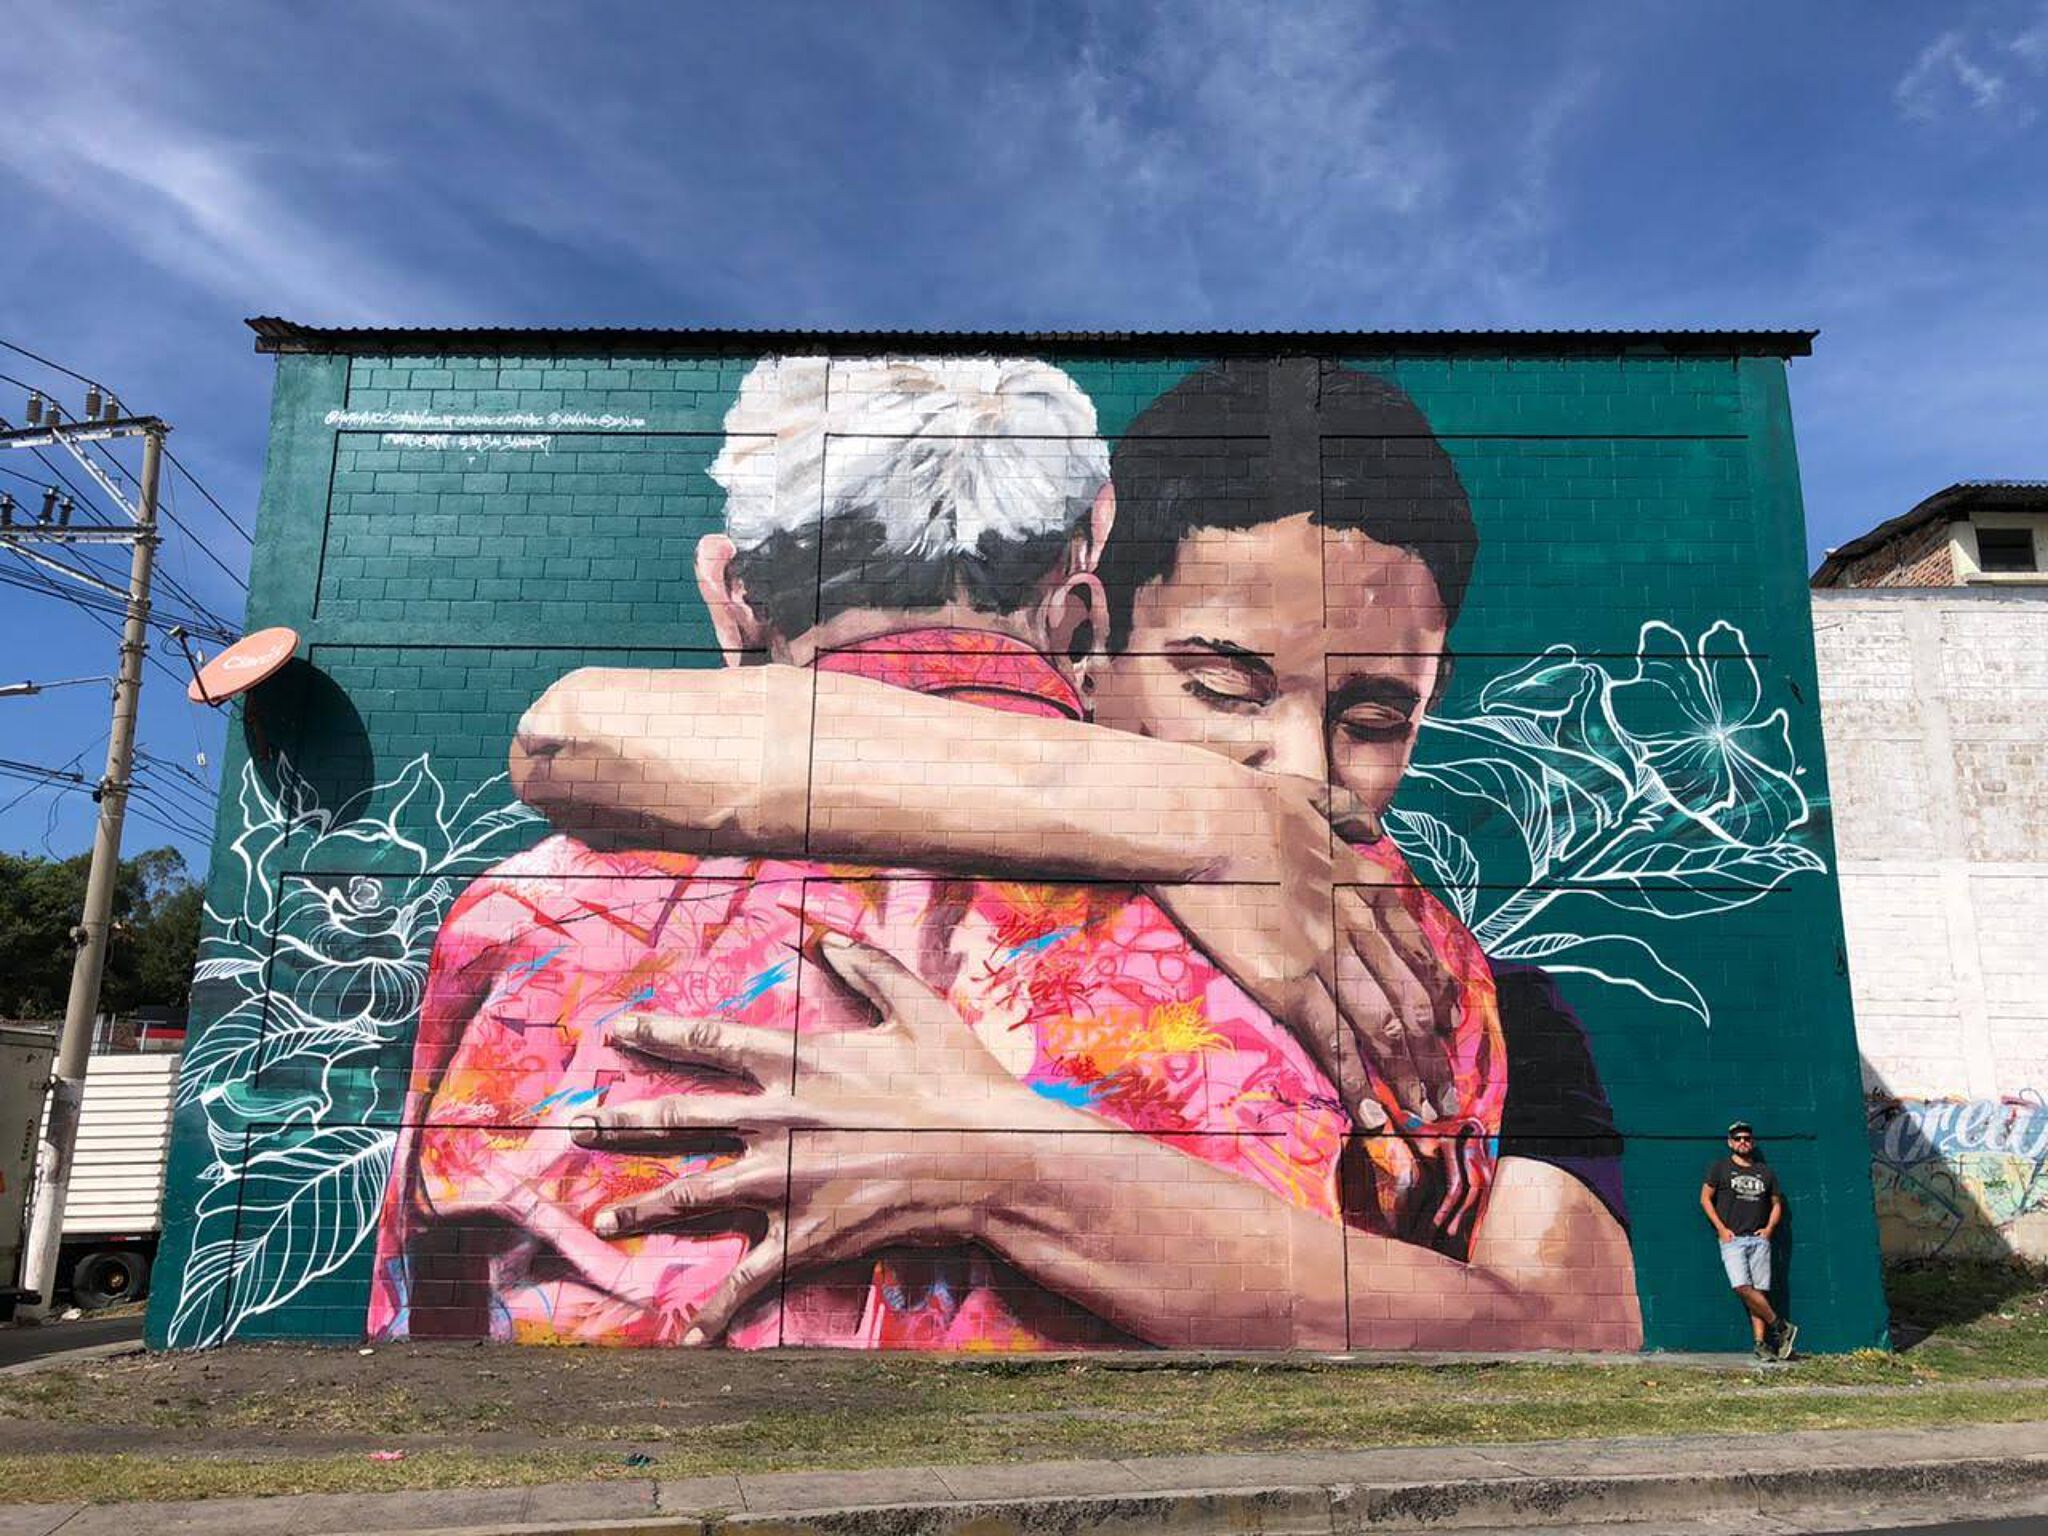 Vertigo graffiti, Ecks, Cazdos, Yurika, Darwin Flores&mdash;The Hug